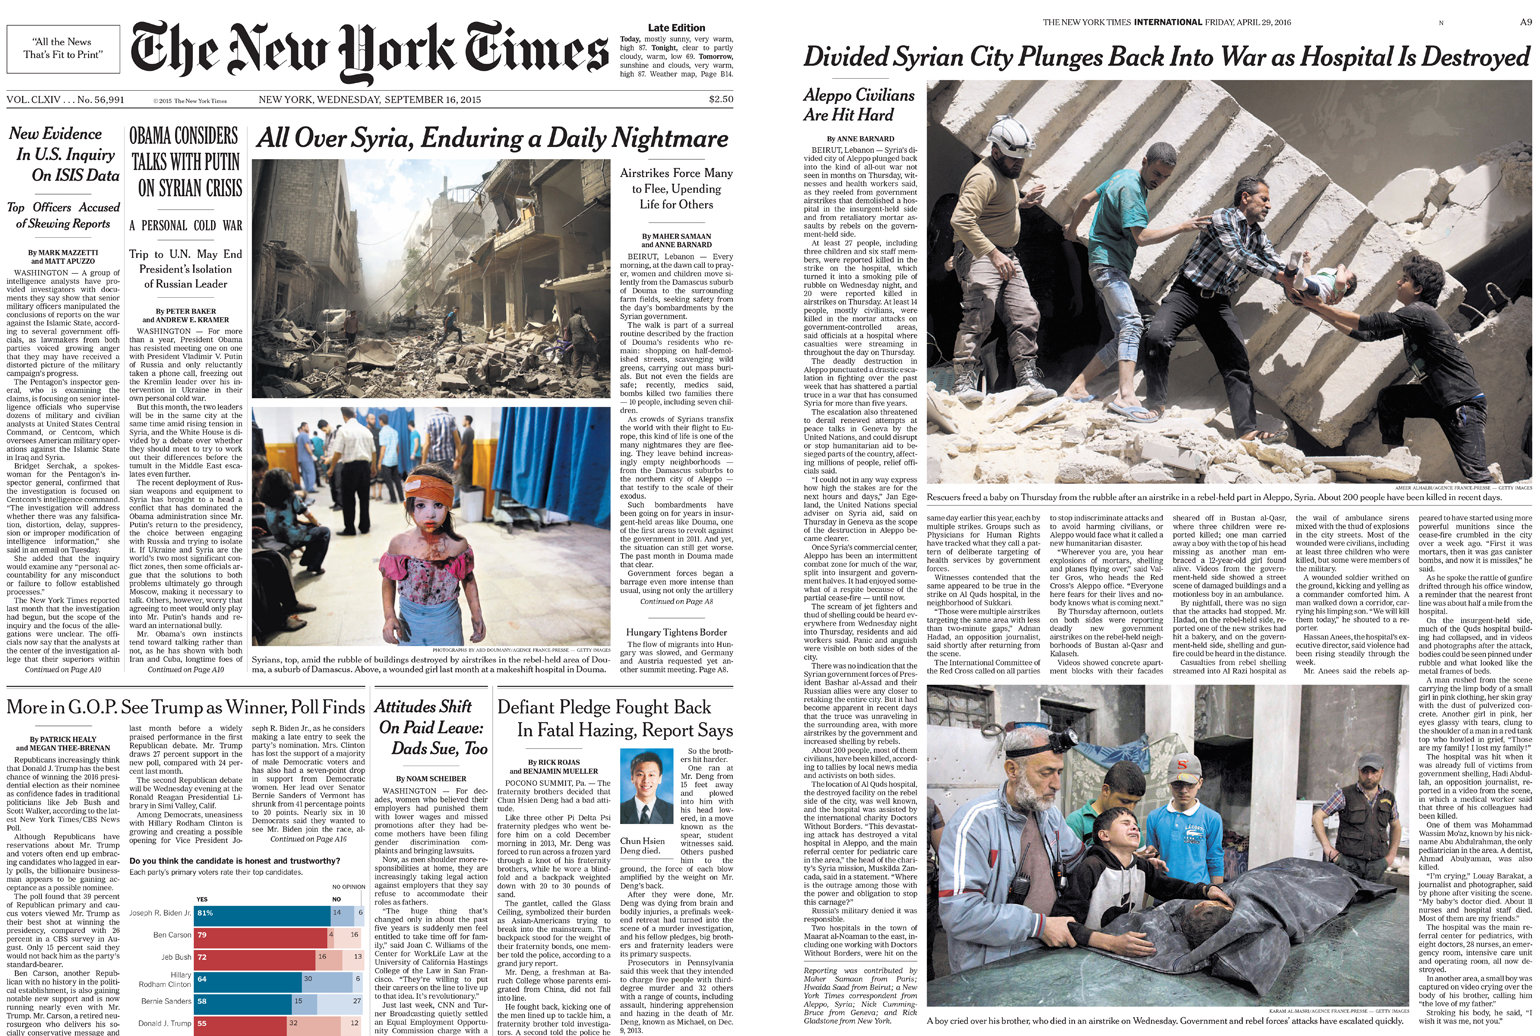 چپ صفحه اول ۱۶ سپتامبر ۲۰۱۵ که دو عکس از شهر دوما در سوریه در آن قرار گرفته‌است. روز ۲۹ آوریل ۲۰۱۶ هم صفحه سرویس بین‌الملل دو عکس از شرایط پس از بمباران هوایی در حلب را نمایش می‌دهد</p>


<p>